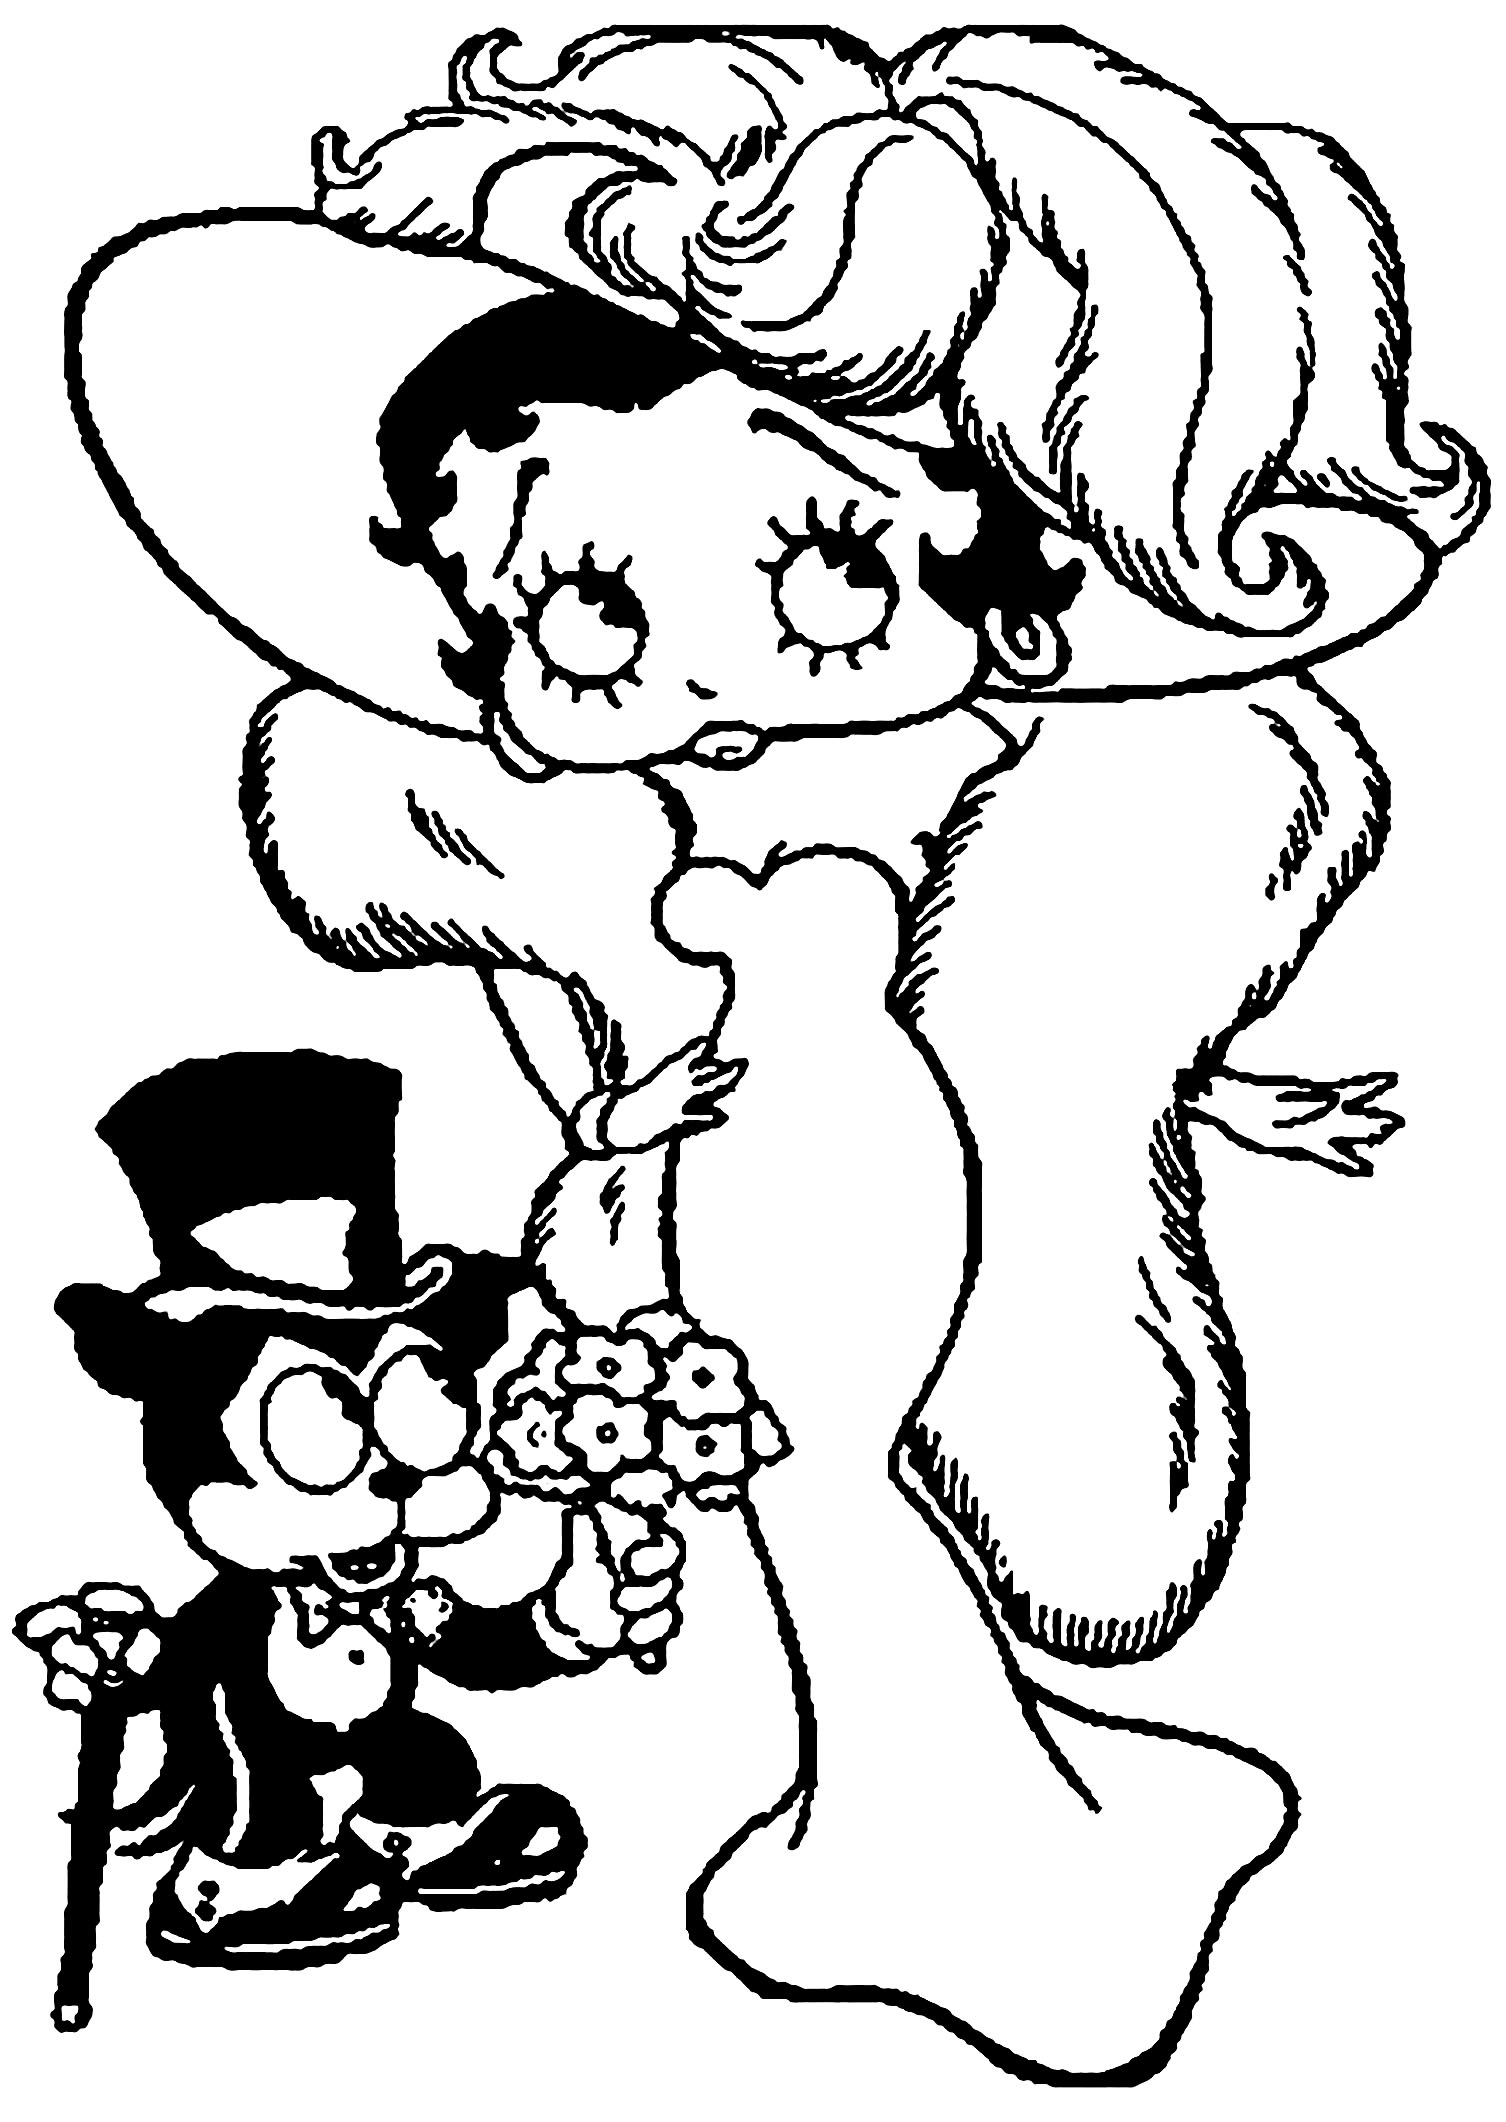 Betty Boop páginas para colorear de lujo bebé Looney Bugs Bunny Páginas para colorear